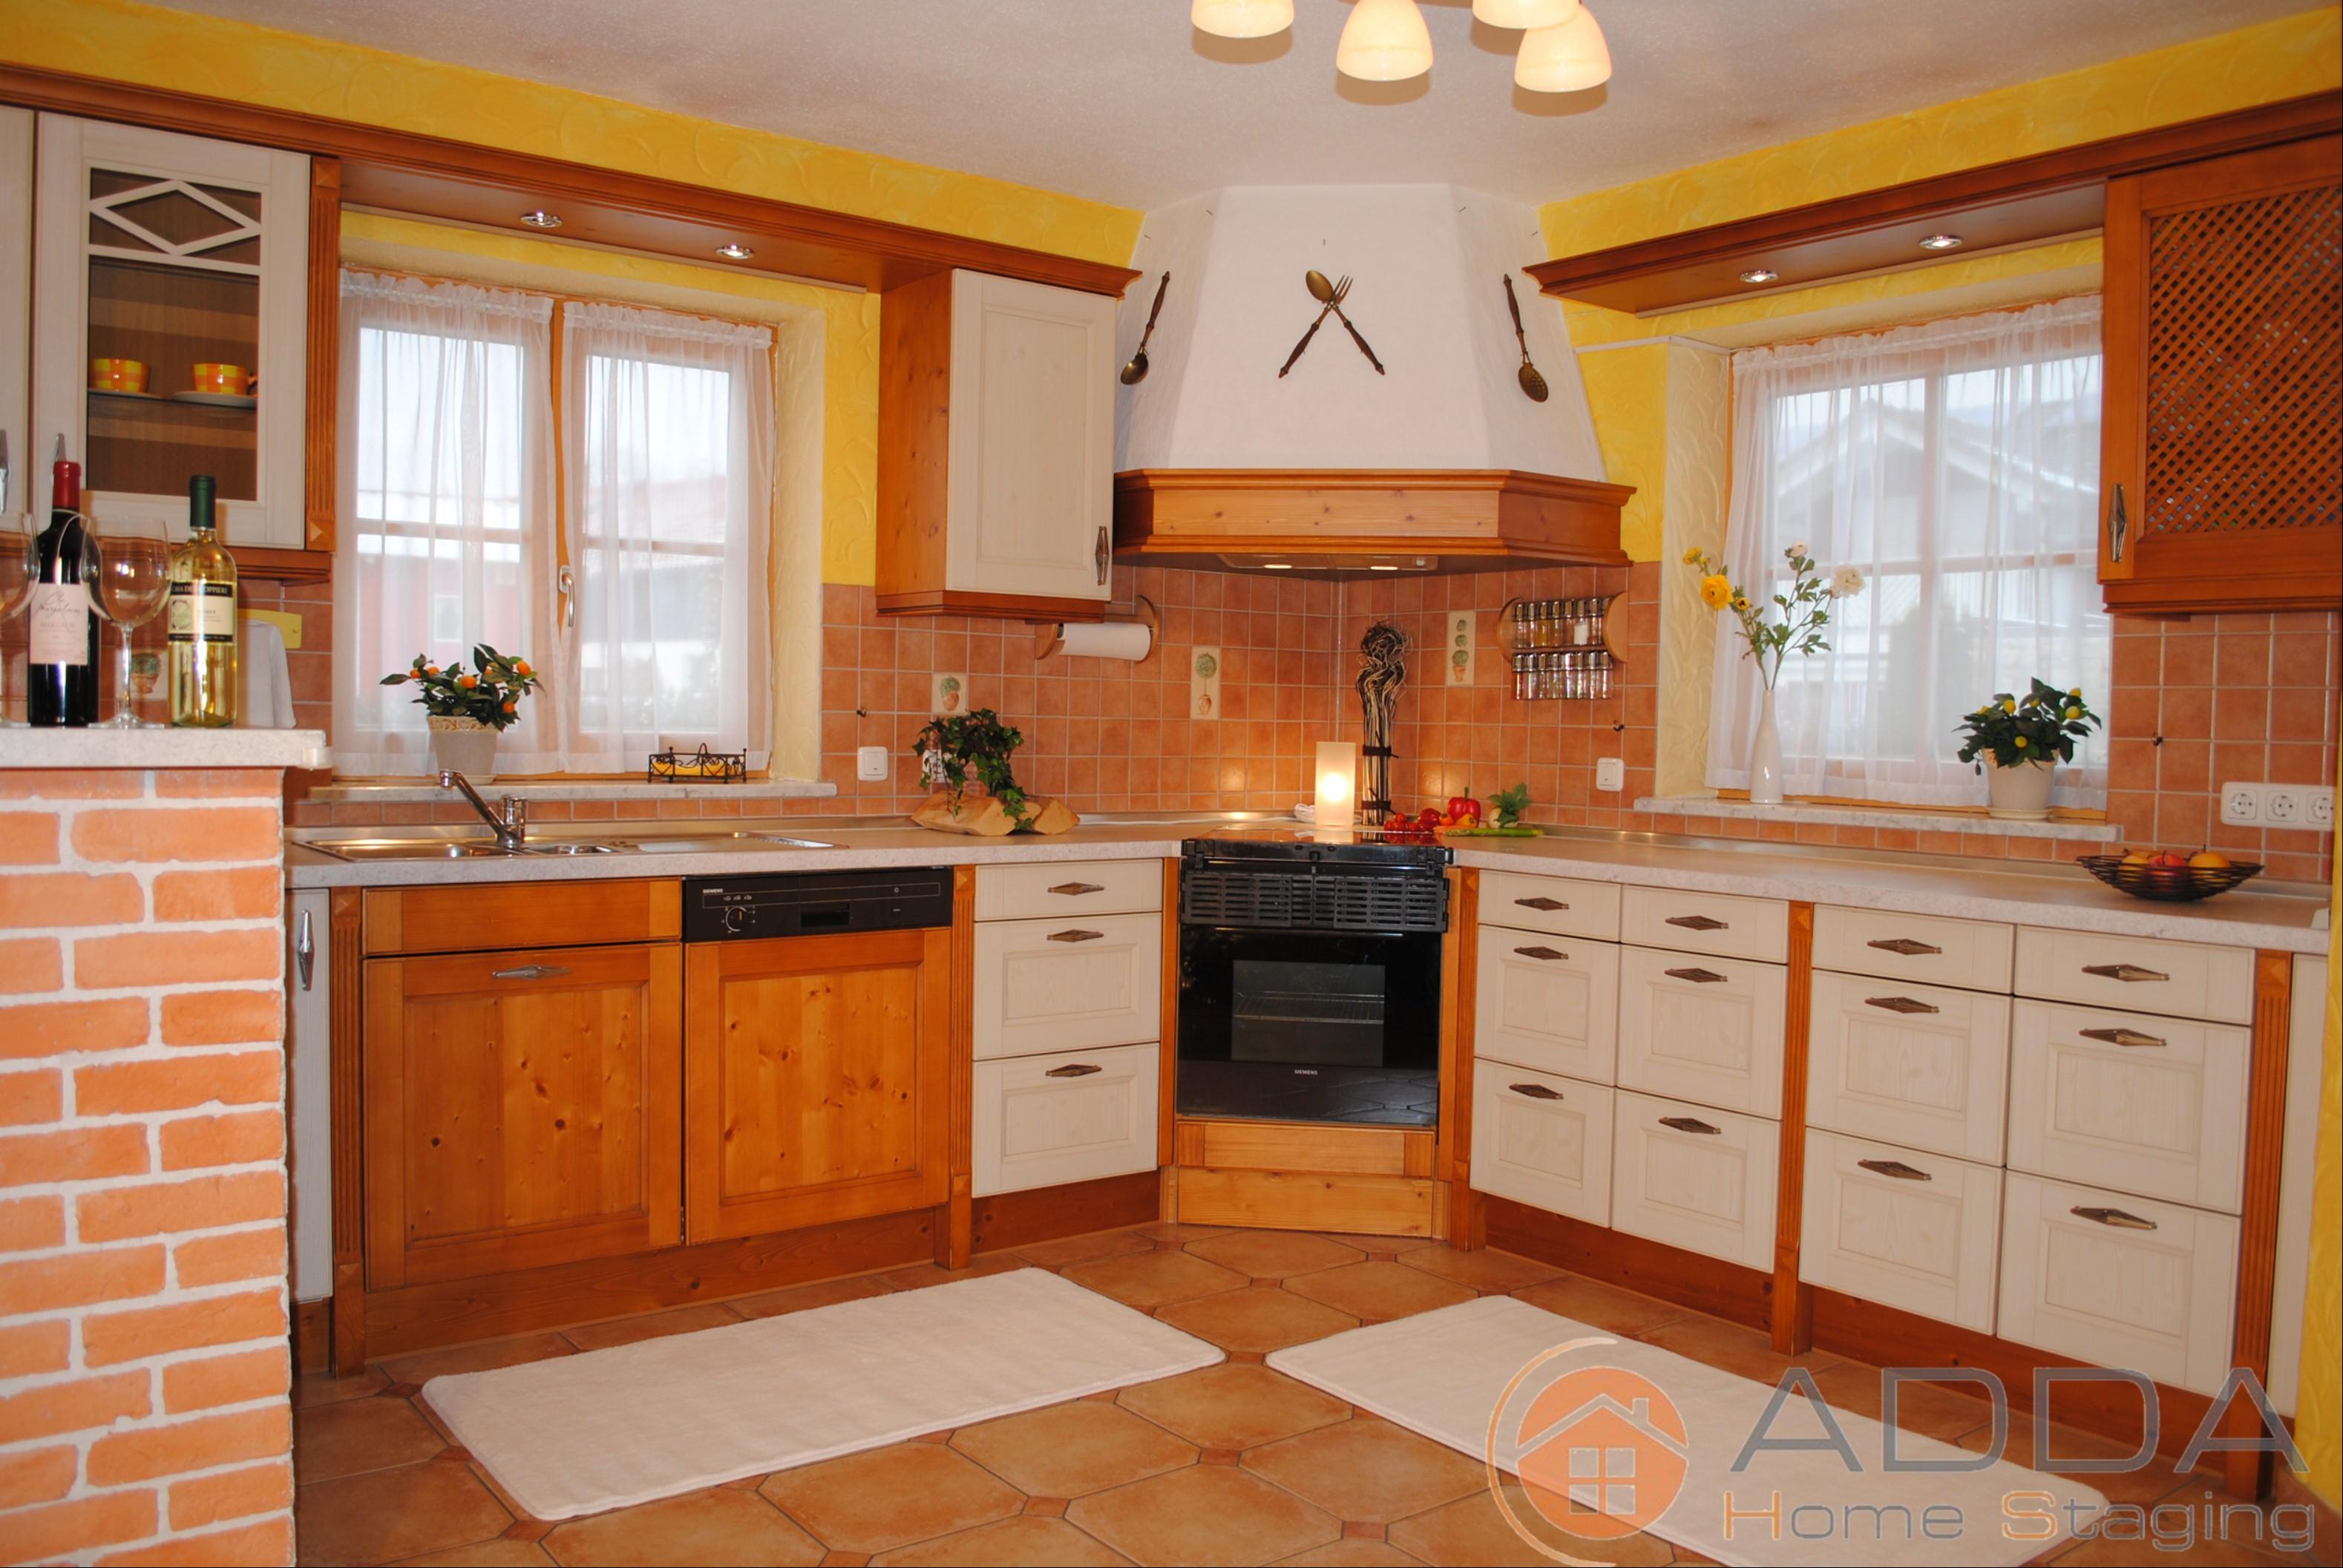 Küche nach dem Home Staging #dunstabzugshaube #offeneküche #küchengestaltung #küchendeko #rustikaleküche #küchenbeleuchtung ©ADDA Home Staging